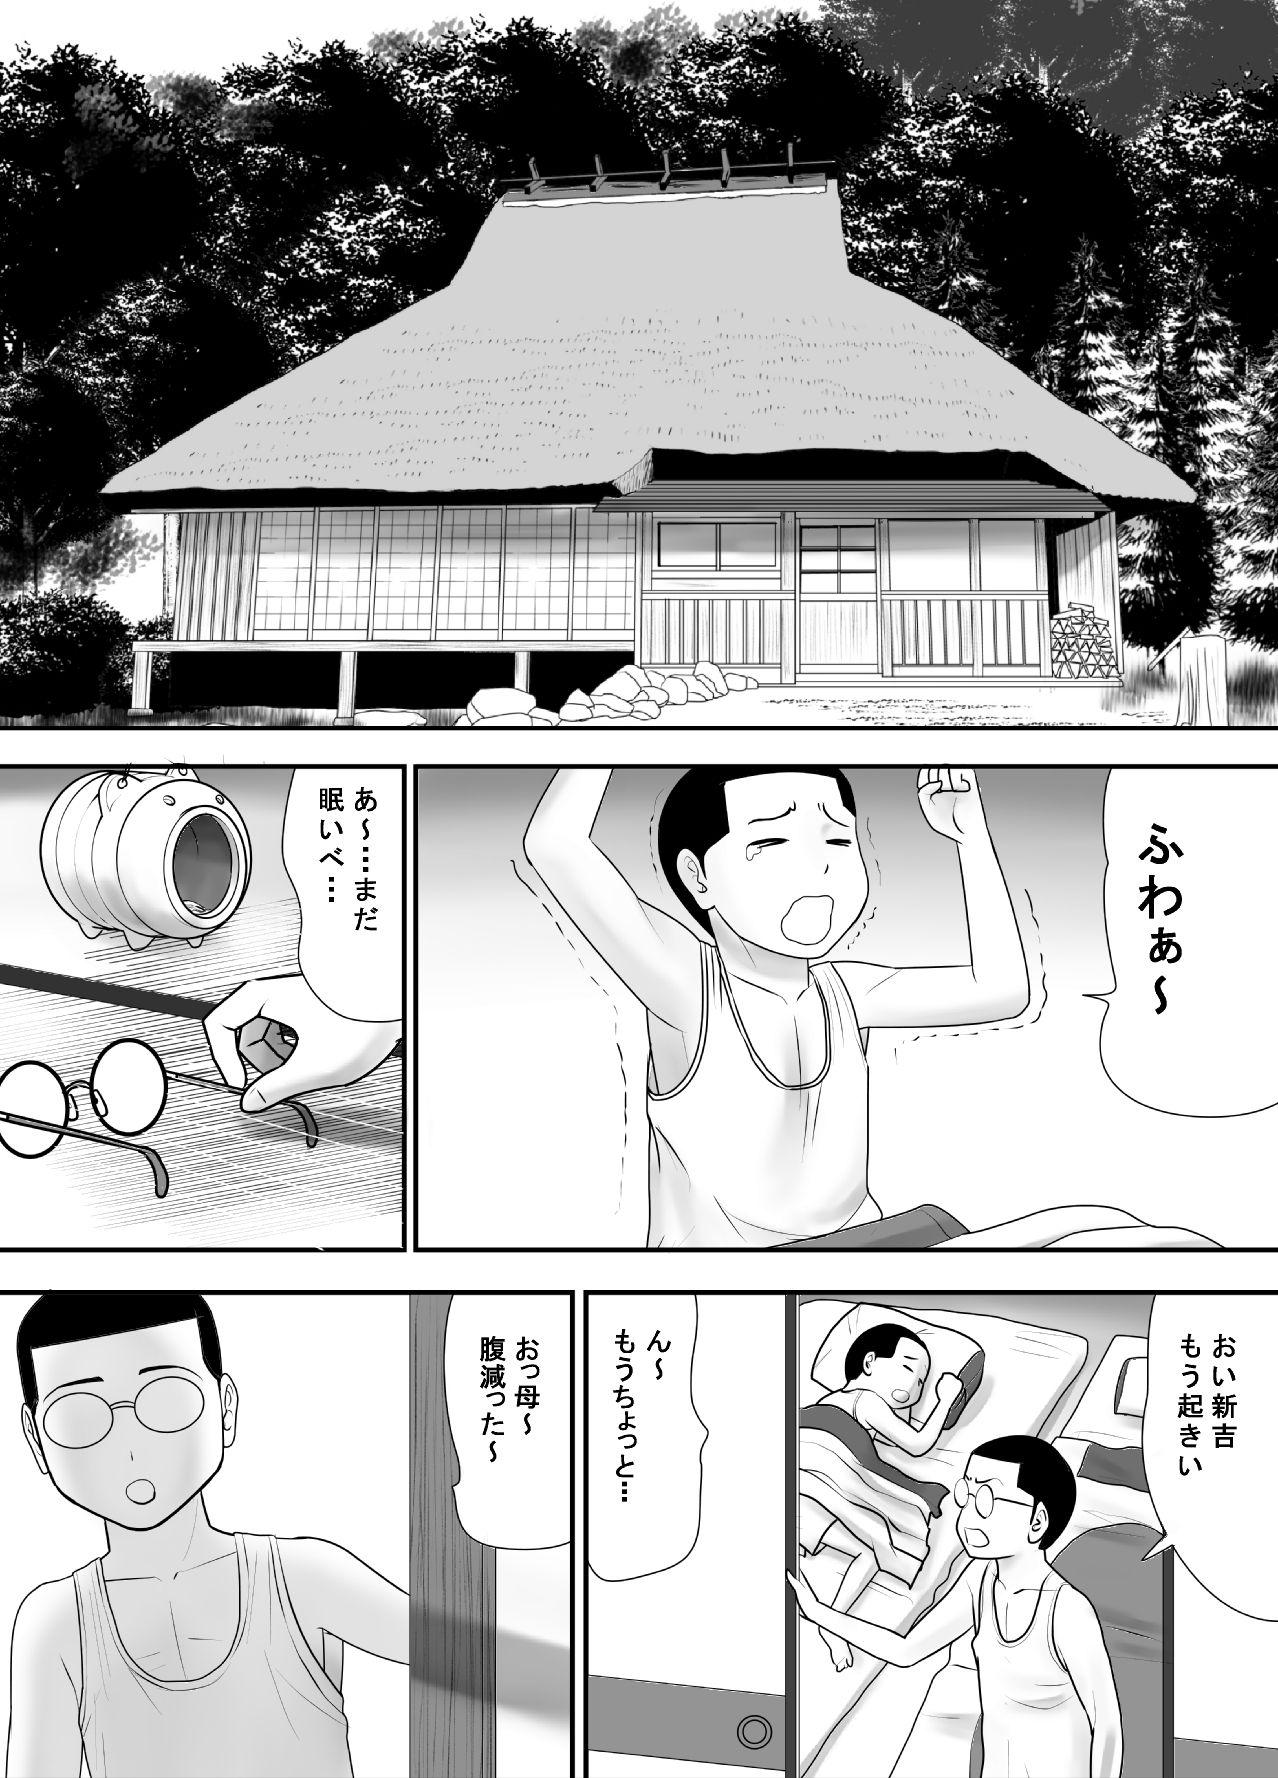 Grandma Subete o Ukeirete Kureru Tomodachi no Okka-san - Original Muscle - Page 3